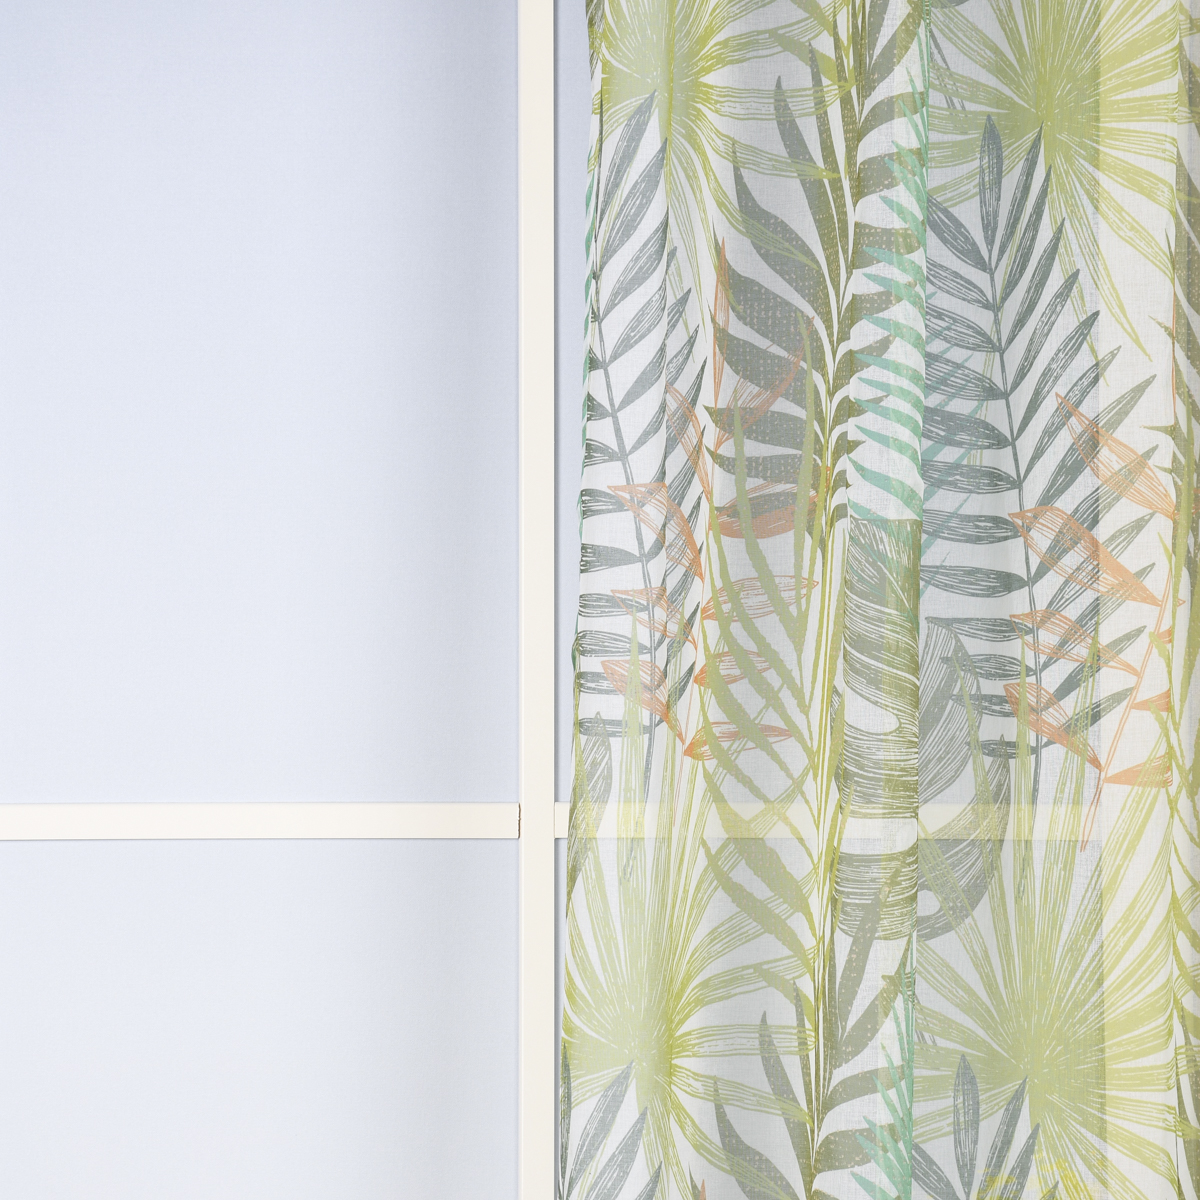 Ösengardine Leinenstruktur bedruckt Palmenblätter weiß grün orange  140x260cm | meine-stoffe.de - Stoffe Meterwaren Nähzubehör kaufen -